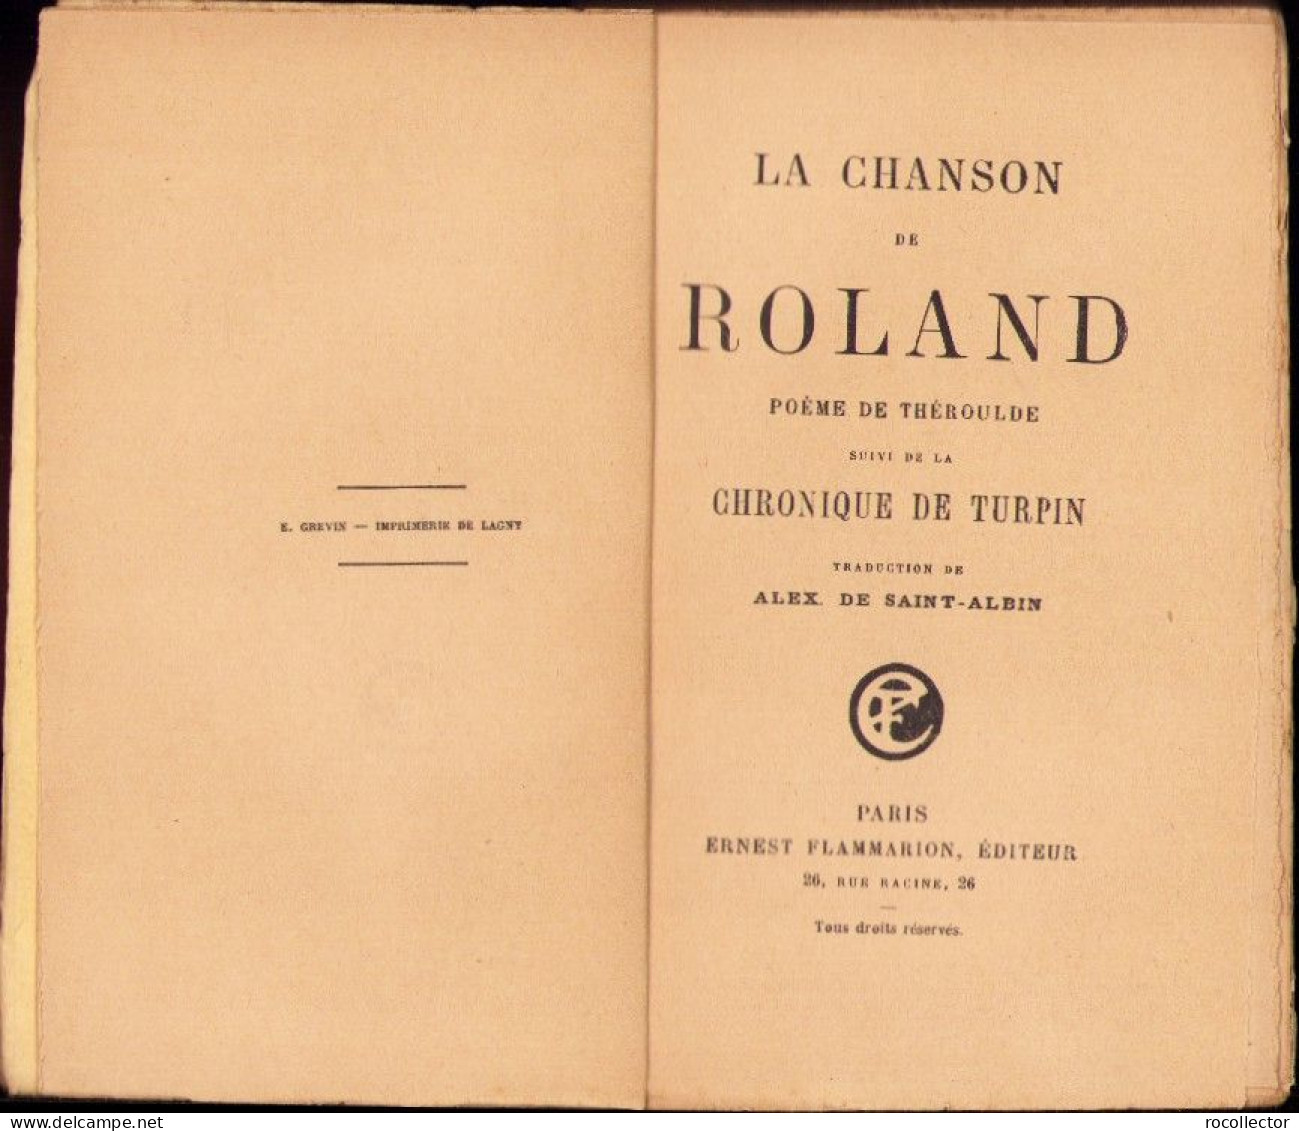 La Chanson De Roland Poeme De Theroulde Suivi De La Chronique De Turpin, Paris C4318N - Libros Antiguos Y De Colección